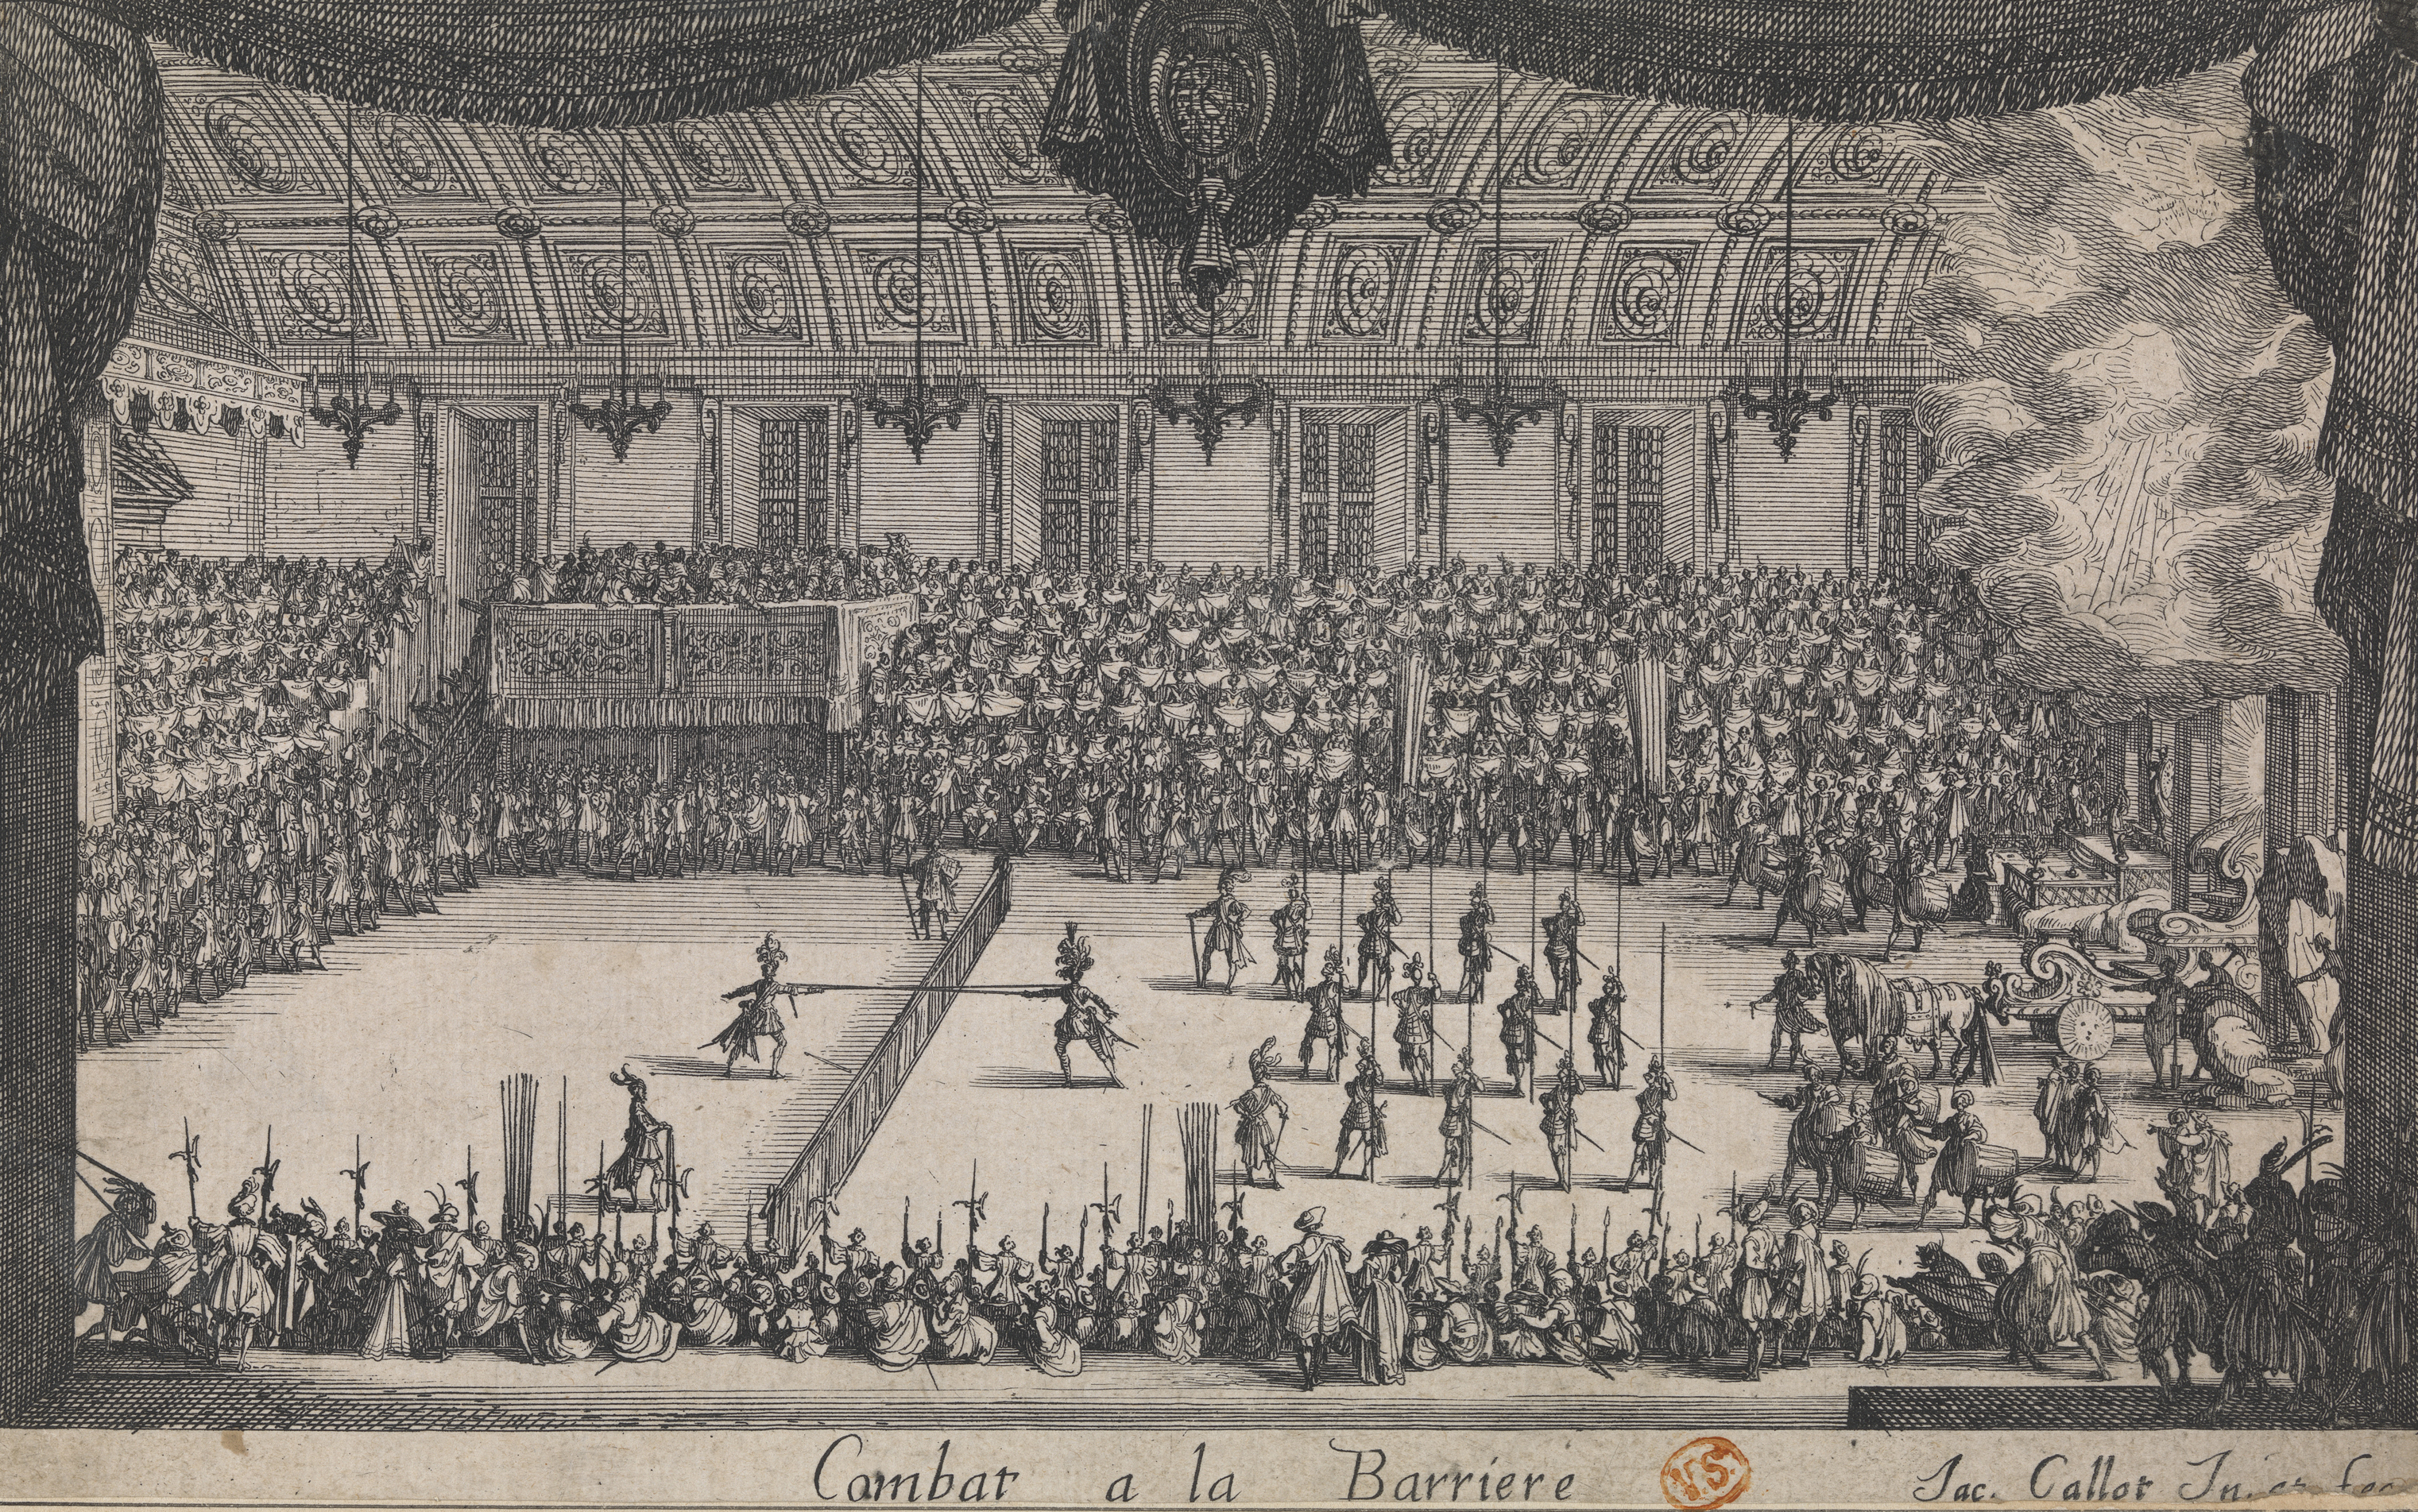 Jacques Callot, Het toernooi in de Feestzaal, Combat à la Barrière, 1627, Musea Brugge, 146 mm x 236 mm, inv. 0000.GRO6236.III, CC0 artinflanders.be